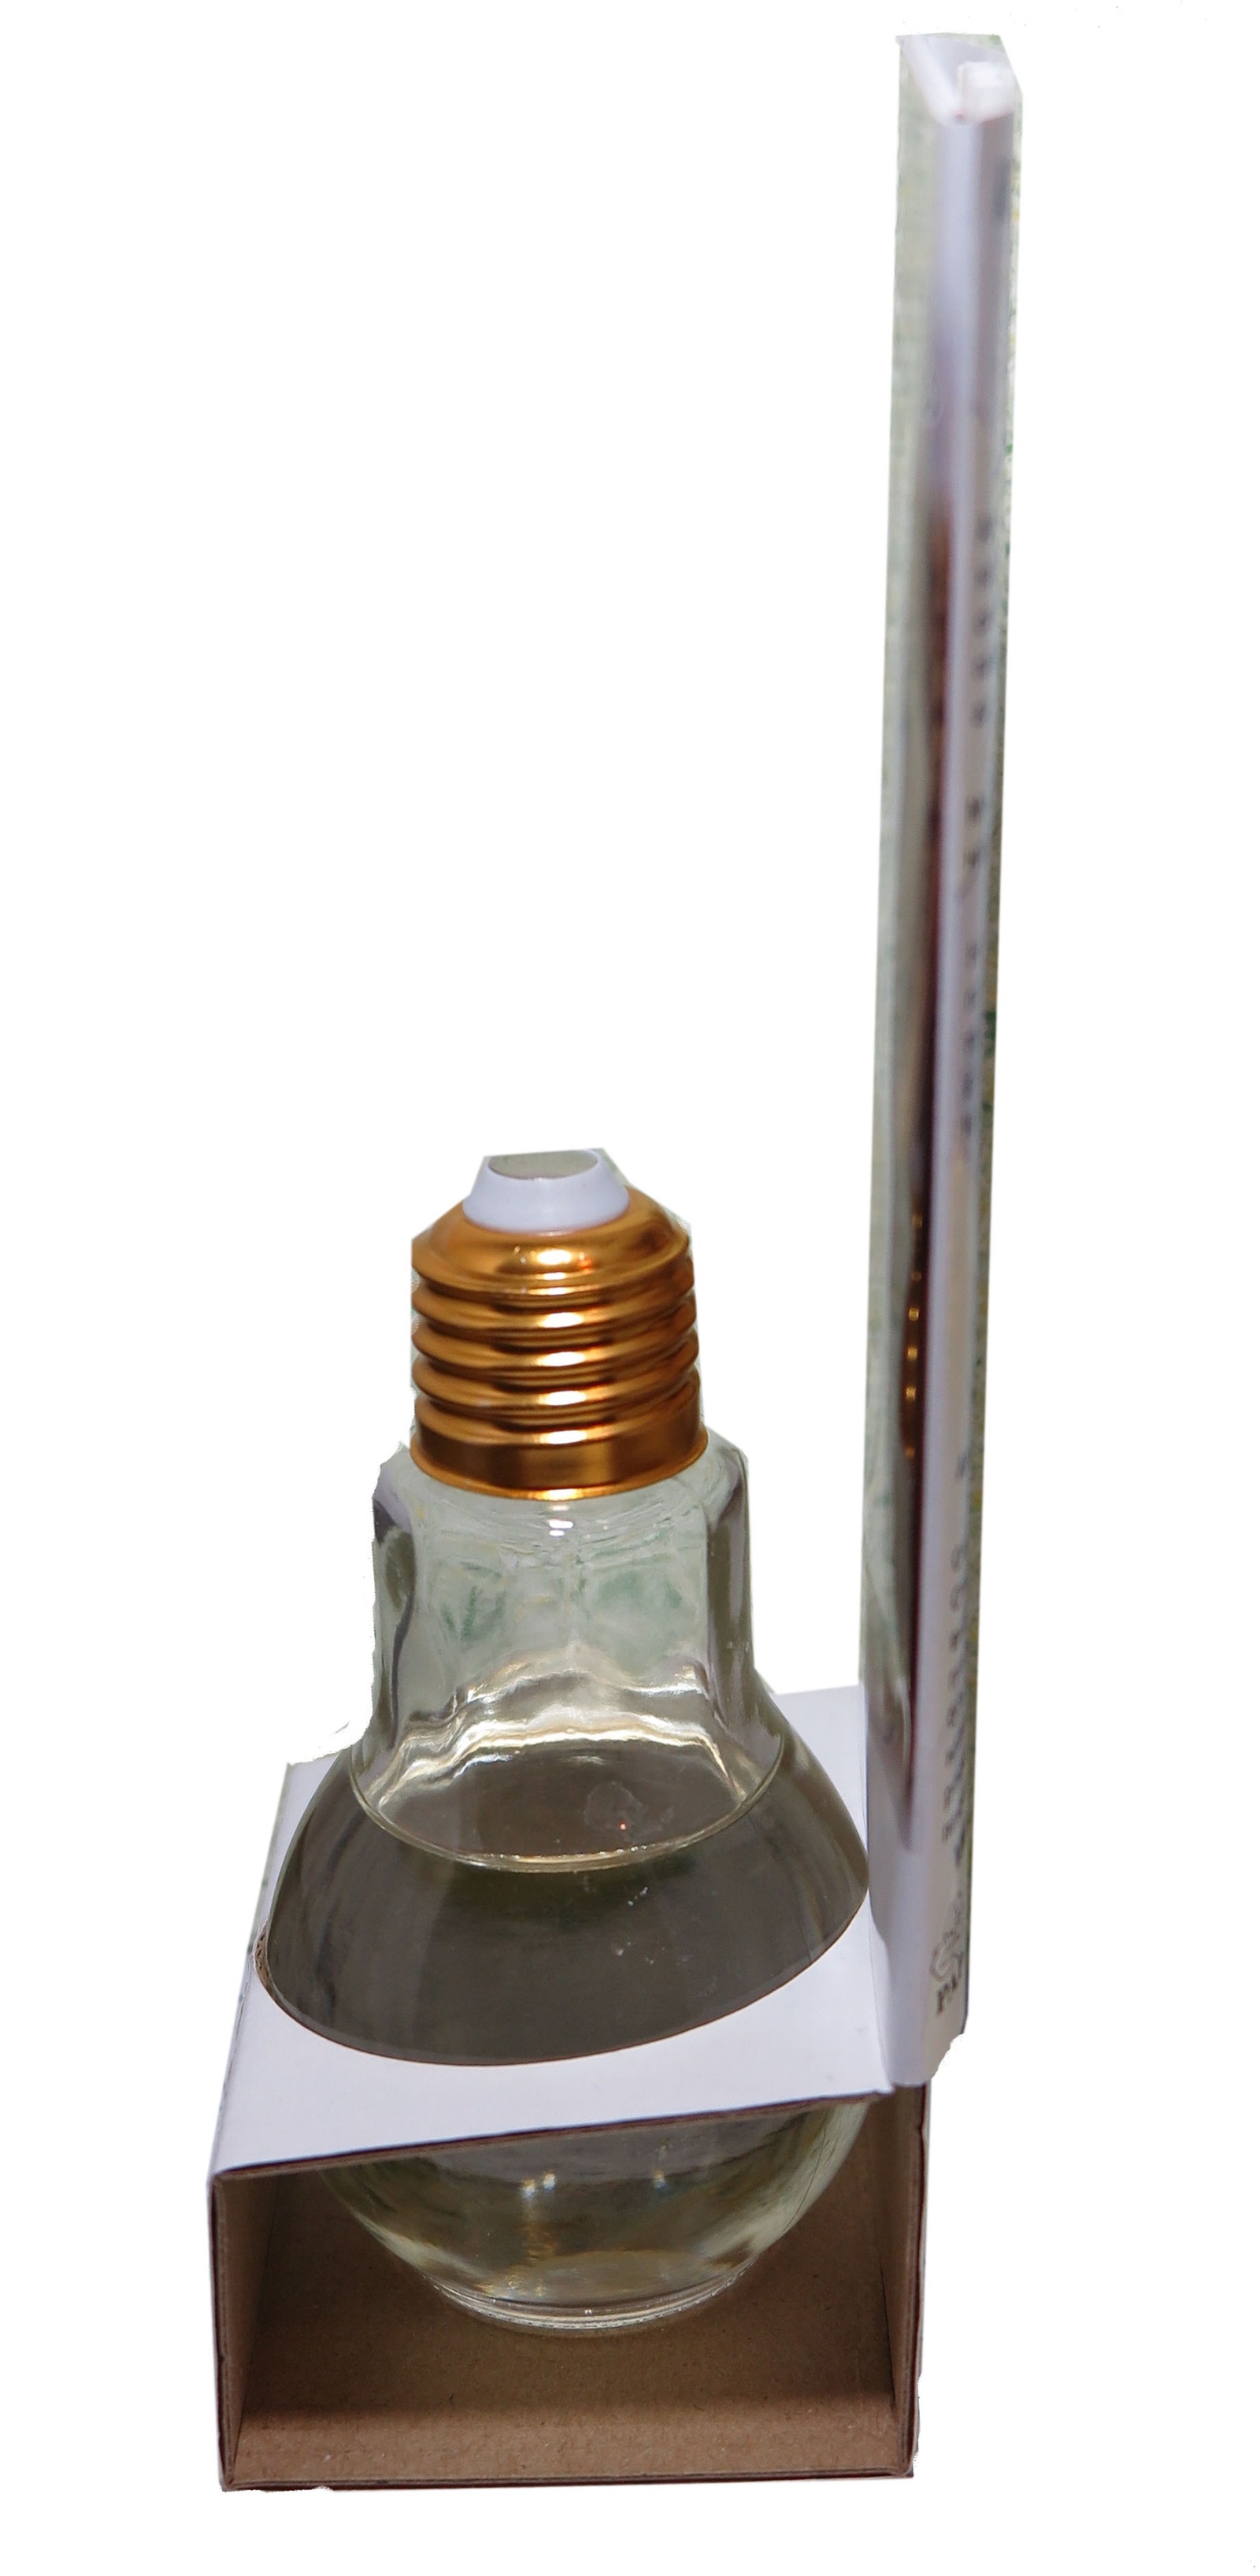 фото Ароматизатор интерьерный  VAN&MUN Диффузор ароматический Альпийский Букет 85мл. с тростниковыми палочками, VM0816, желтый